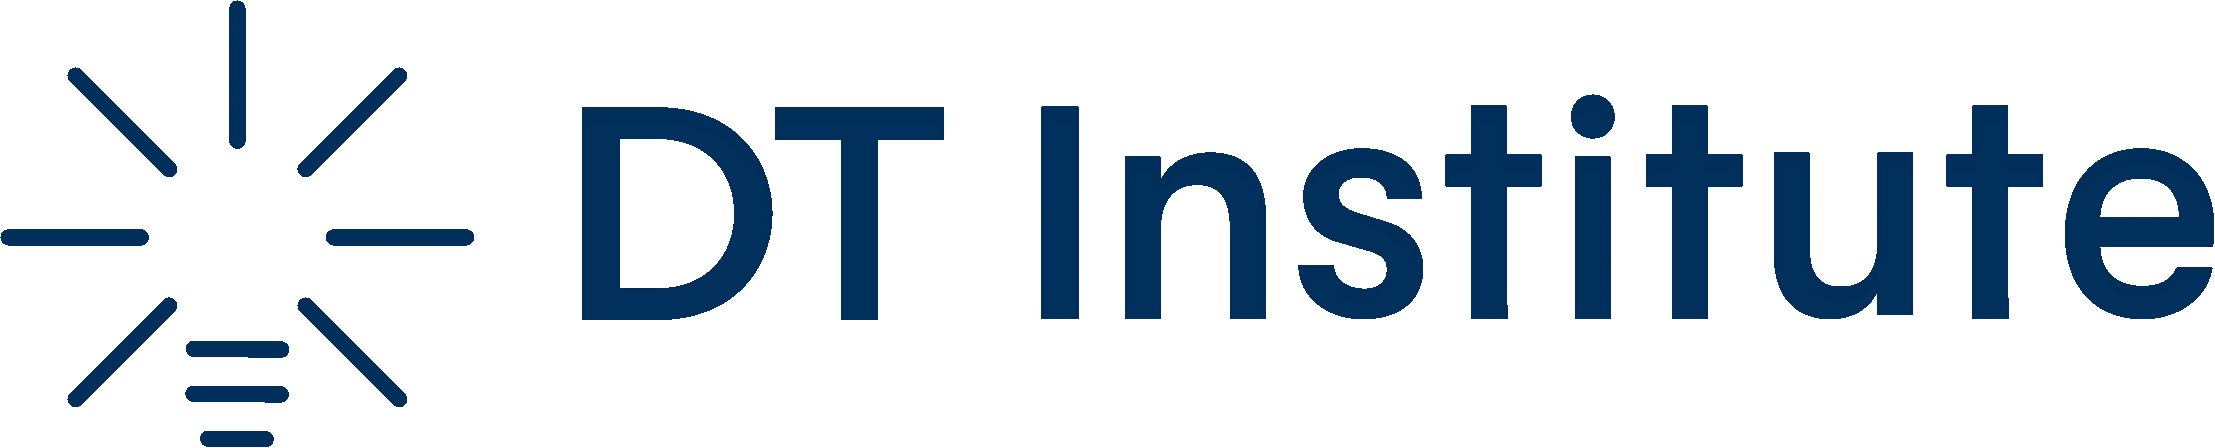 DT Institute Logo